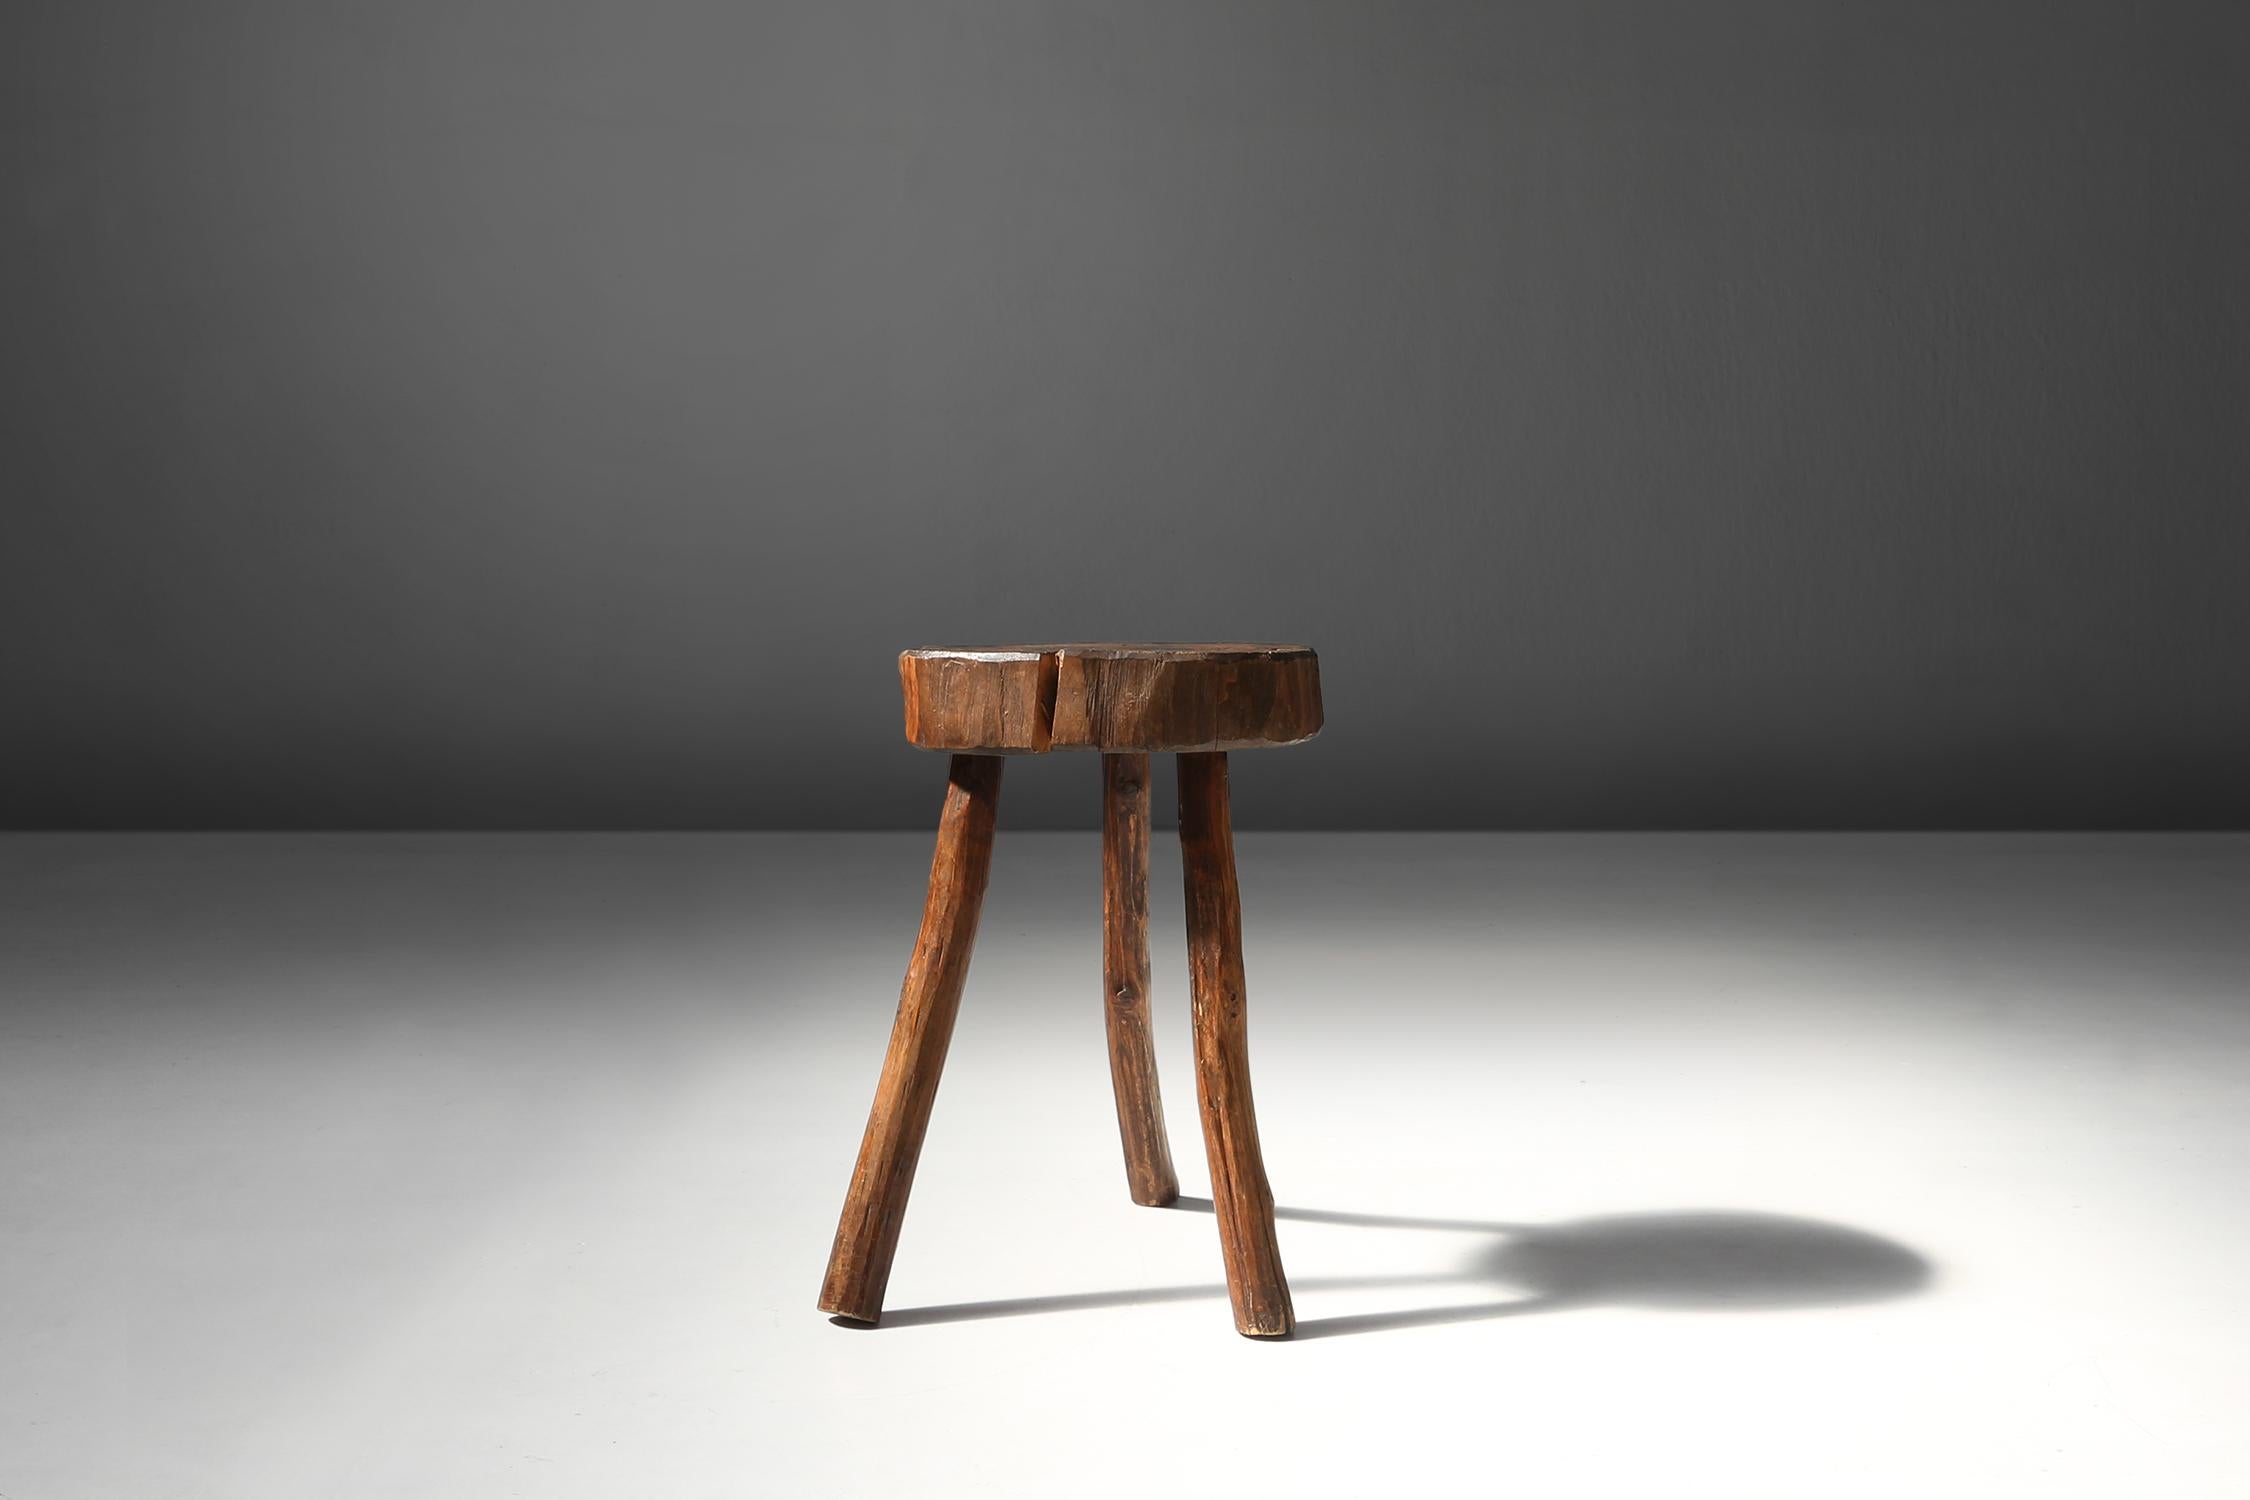 Dieser aus einem Baumstamm gefertigte Holzhocker aus dem 19. Jahrhundert ist ein einzigartiges und authentisches Möbelstück, das jedem Raum eine rustikale Atmosphäre verleiht.

Der Hocker hat drei robuste Beine, die der natürlichen Form des Baumes